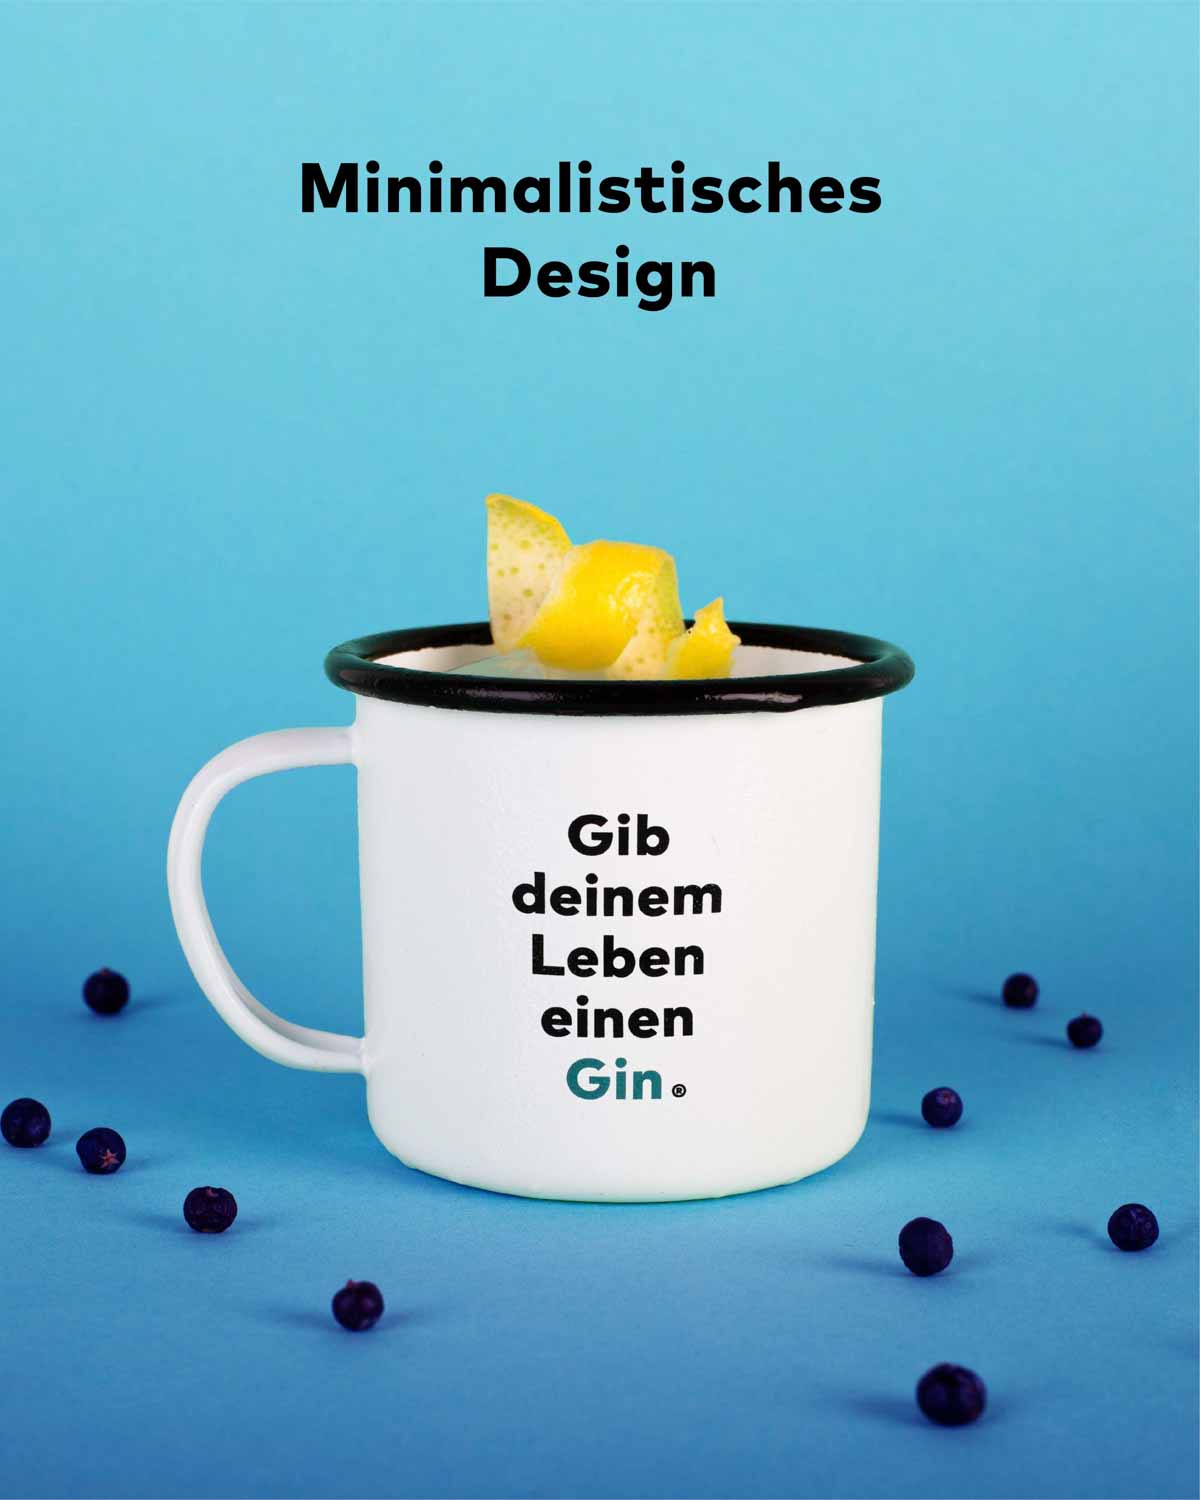 Die Festival Tasse mit dem Spruch "Gib deinem Leben einen Gin". Das Design ist minimalistisch schwarz und weiß und das Wort Gin sticht türkis hervor. 